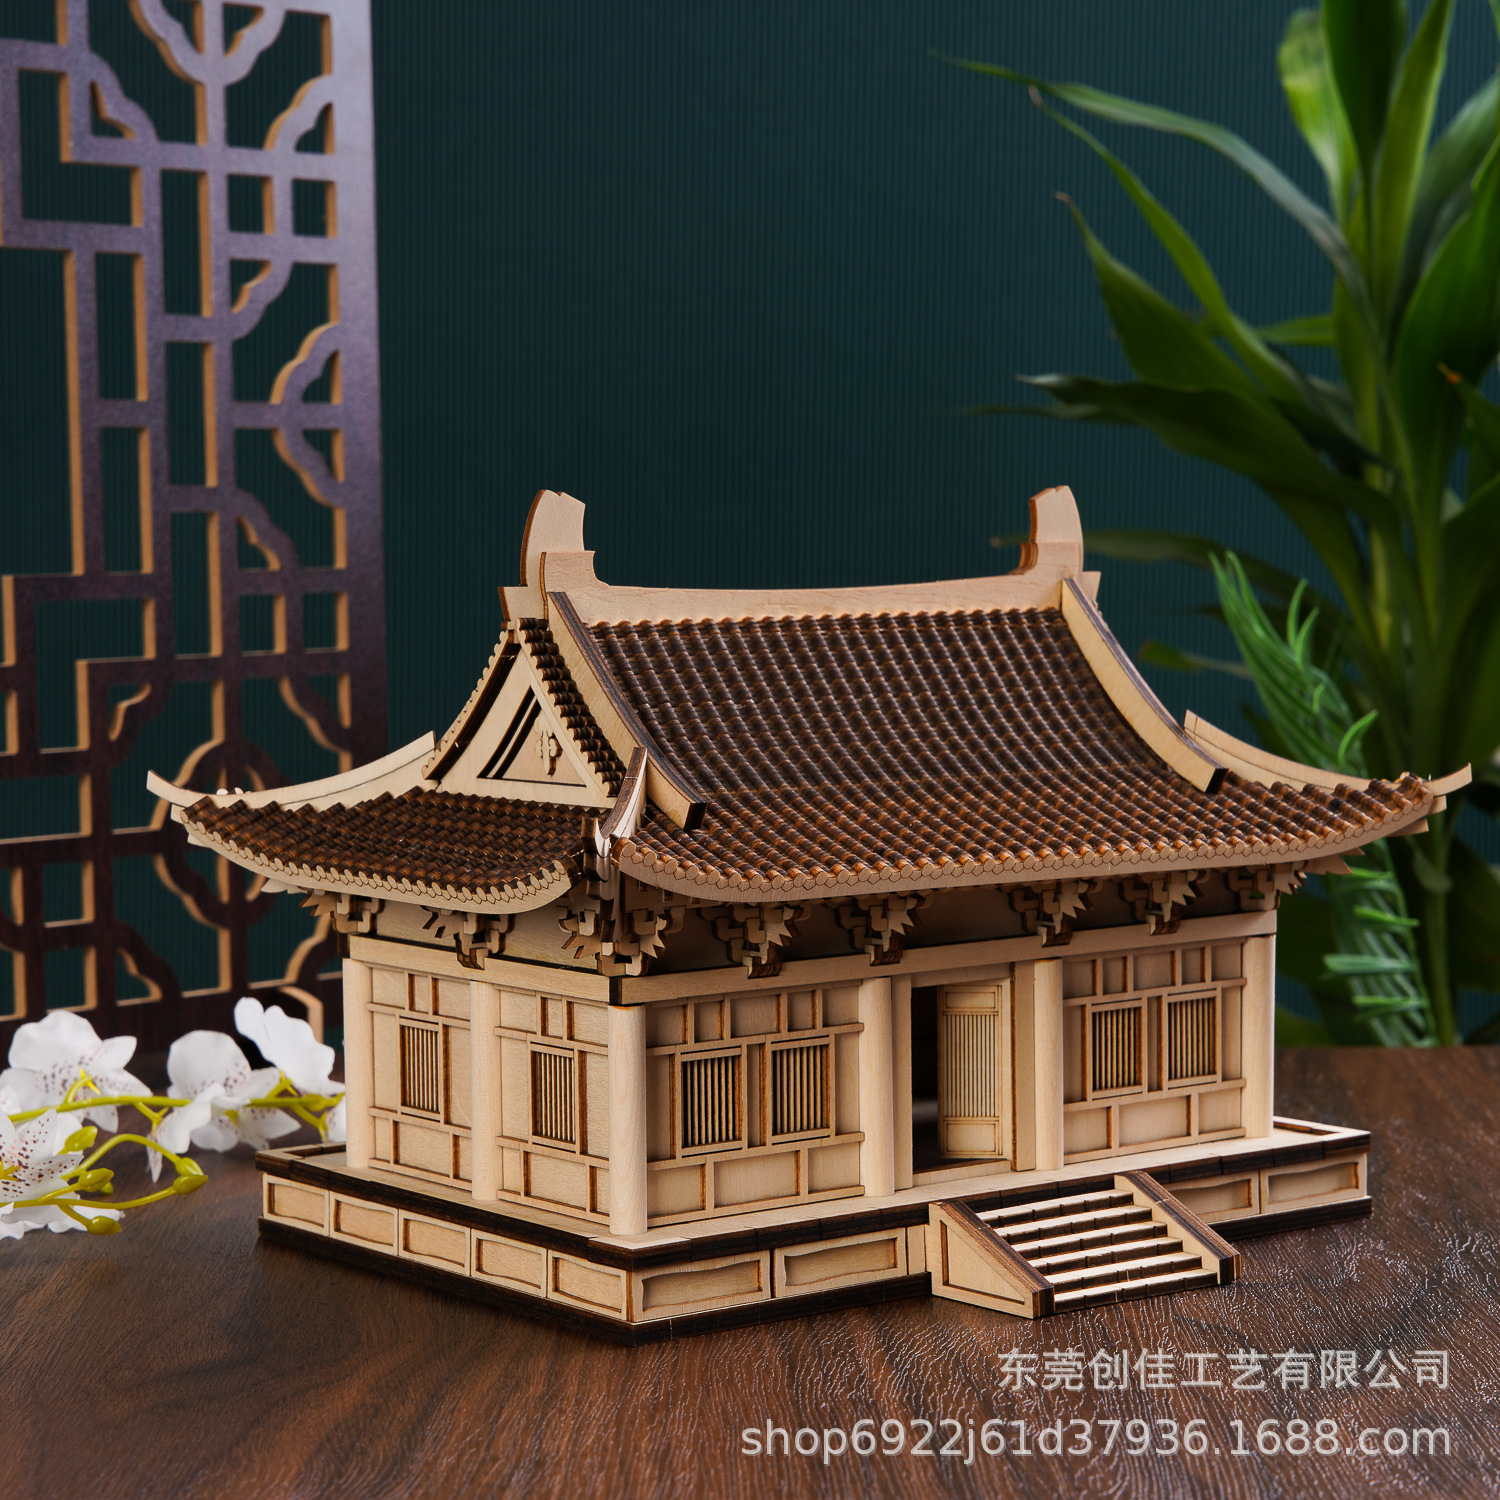 中国风古建筑榫卯积木大殿房子木质立体拼图模型高难度装玩具批发